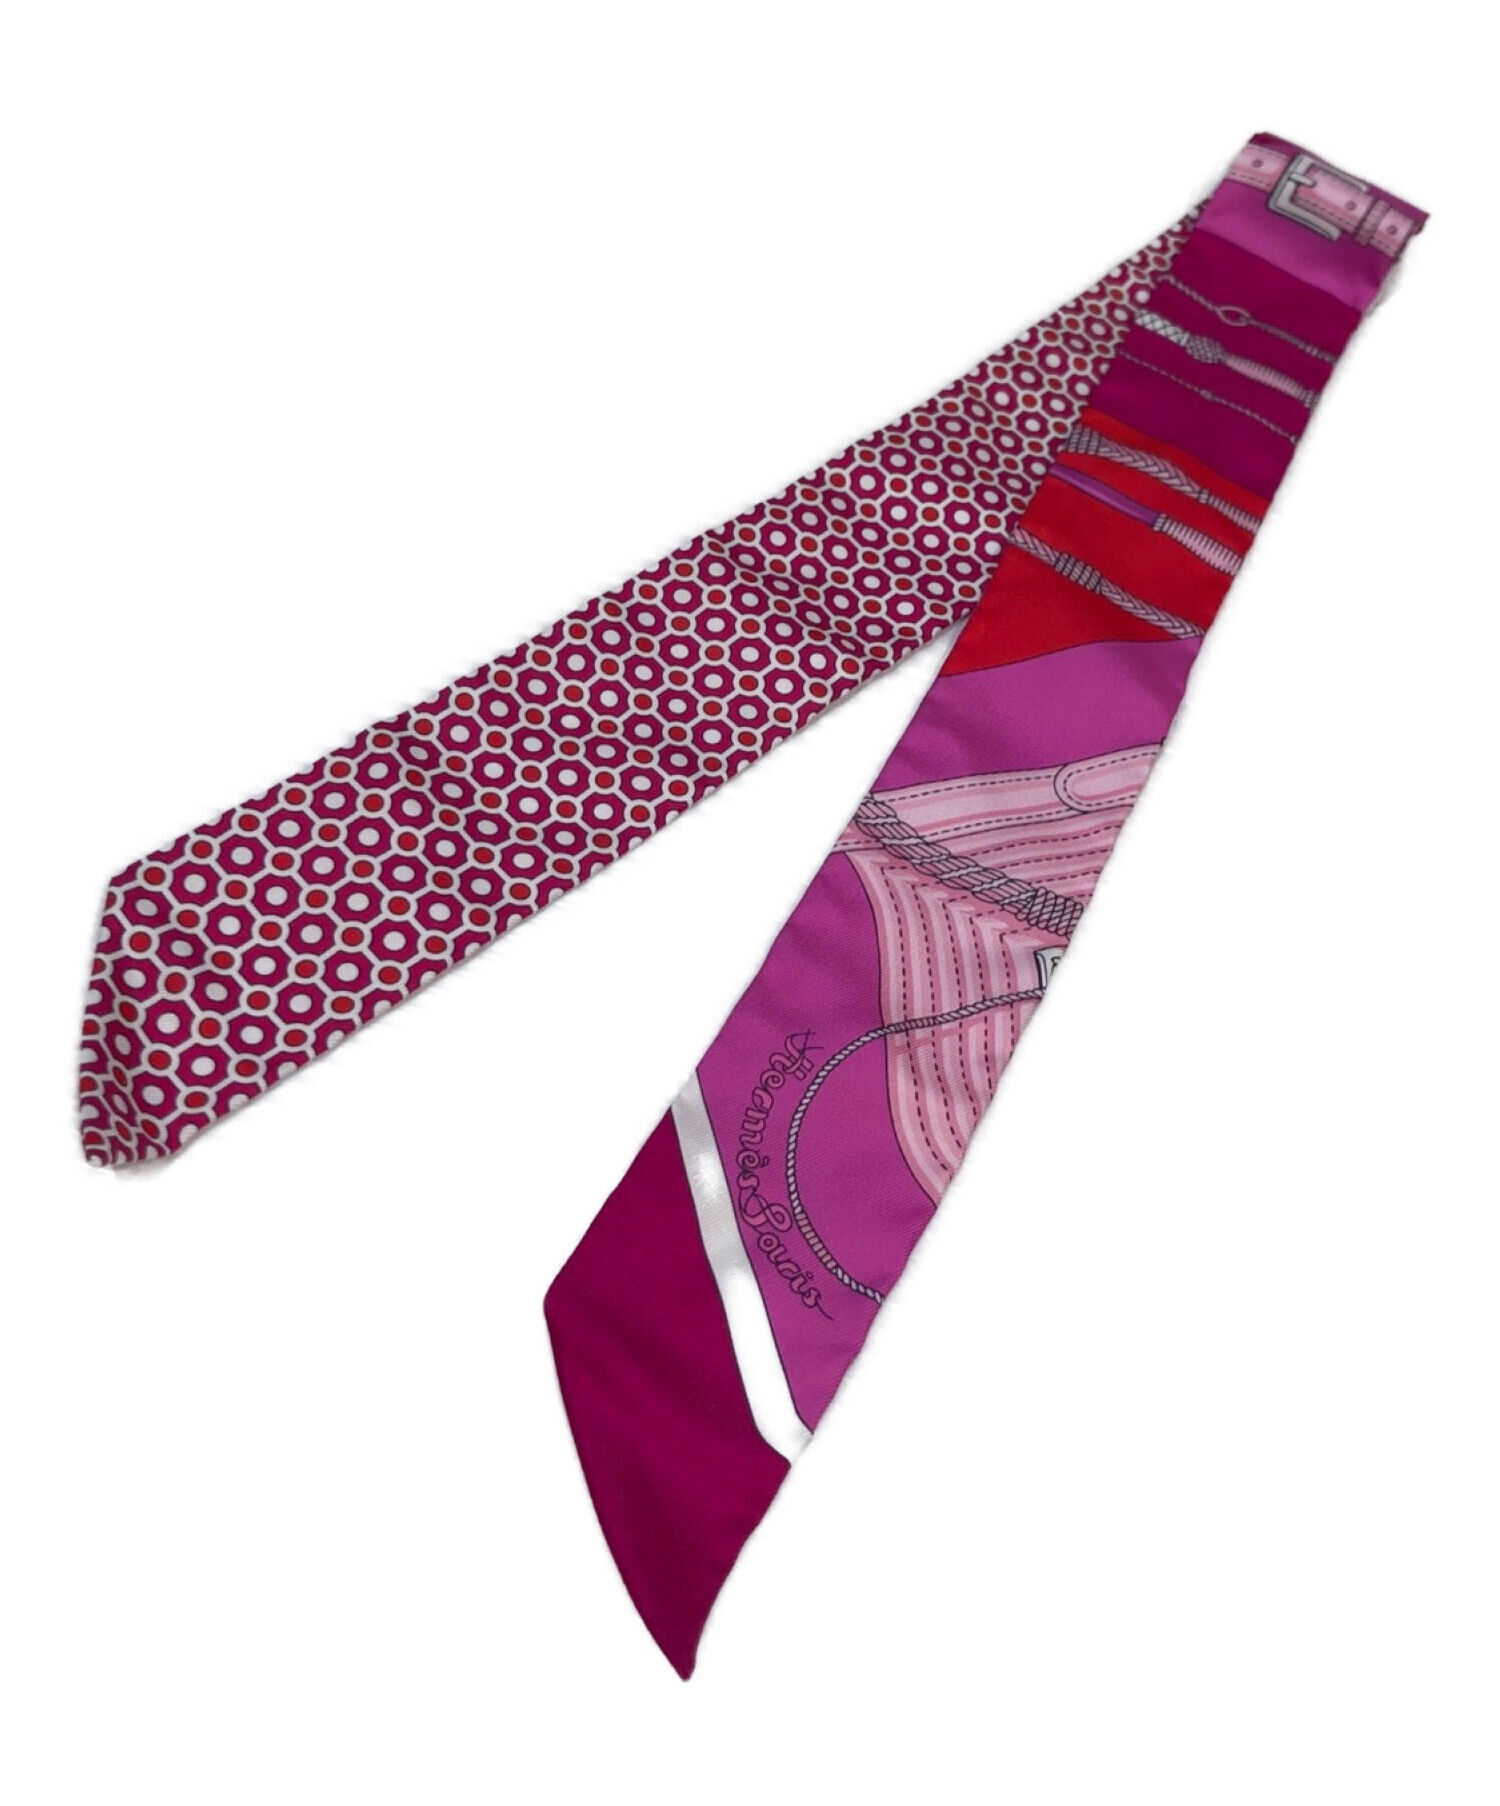 ファッション小物エルメススカーフ、ピンク